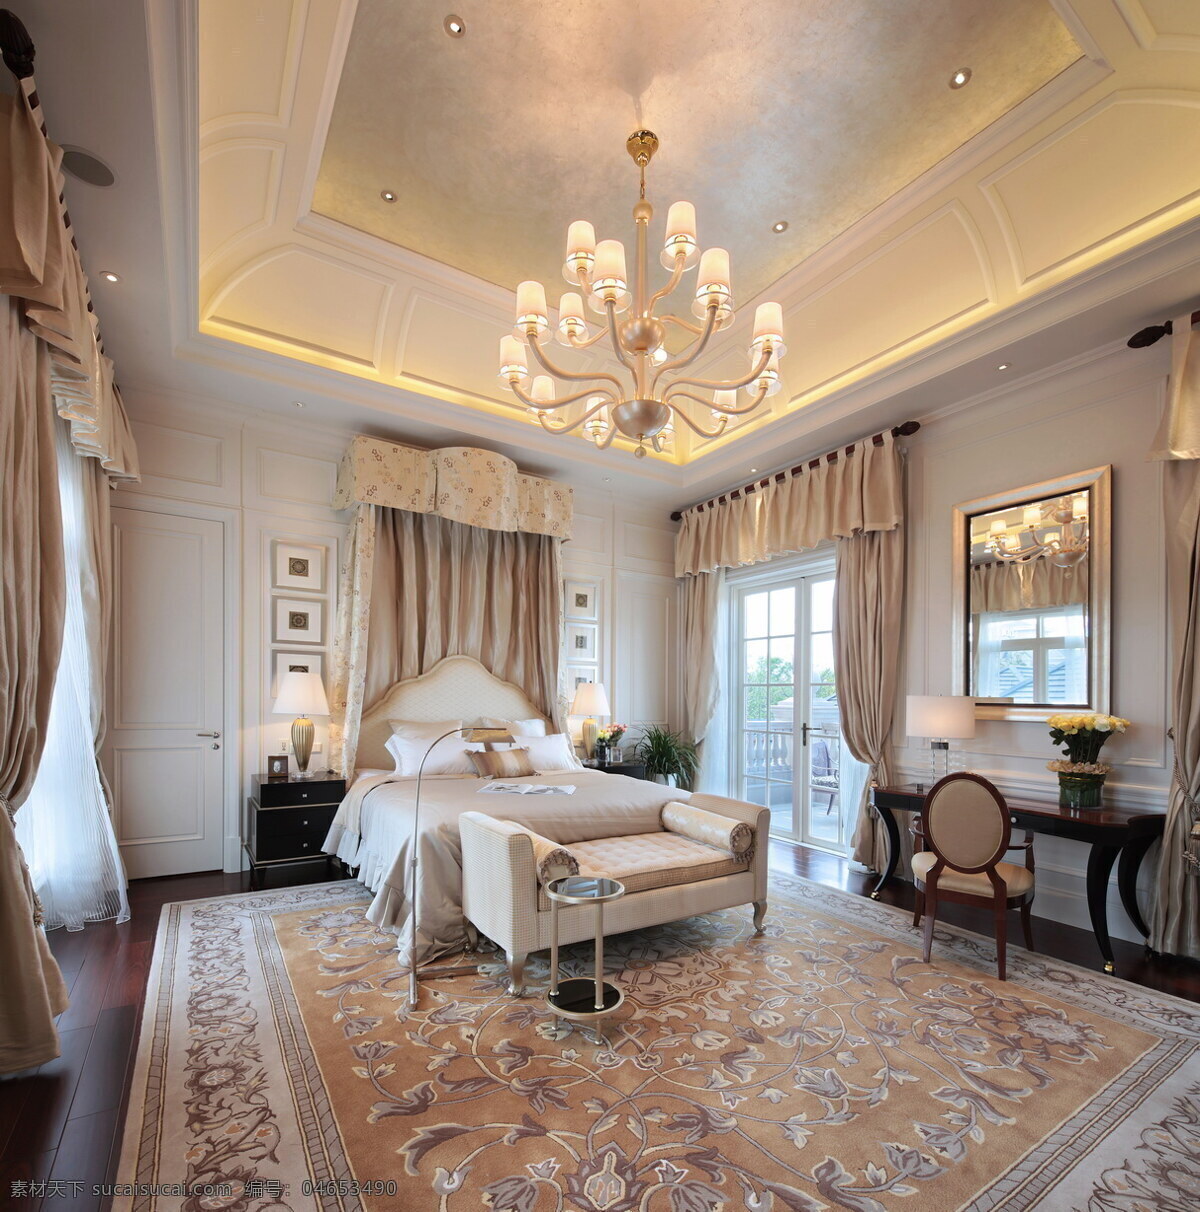 欧式 豪华 卧室 水晶灯 效果图 方形吊顶 白色射灯 花色地毯 床铺 灰色窗帘 壁画 镜子